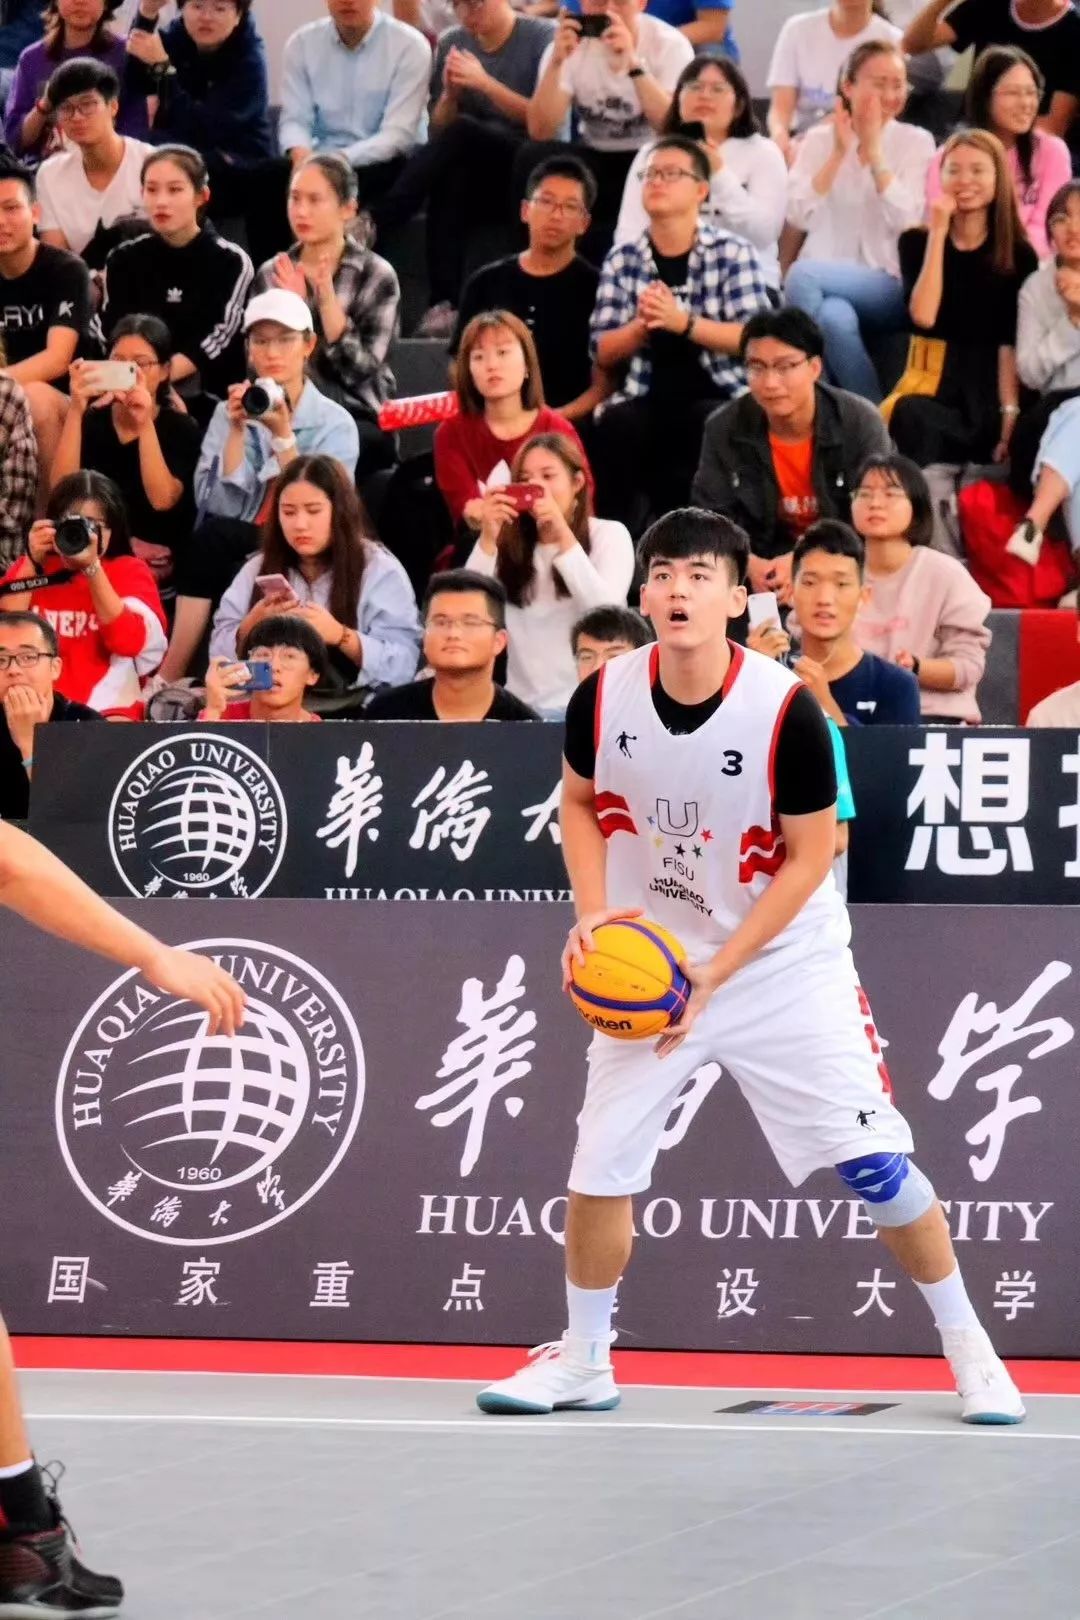 刚刚,华侨大学篮球队拿下了一个世界冠军!